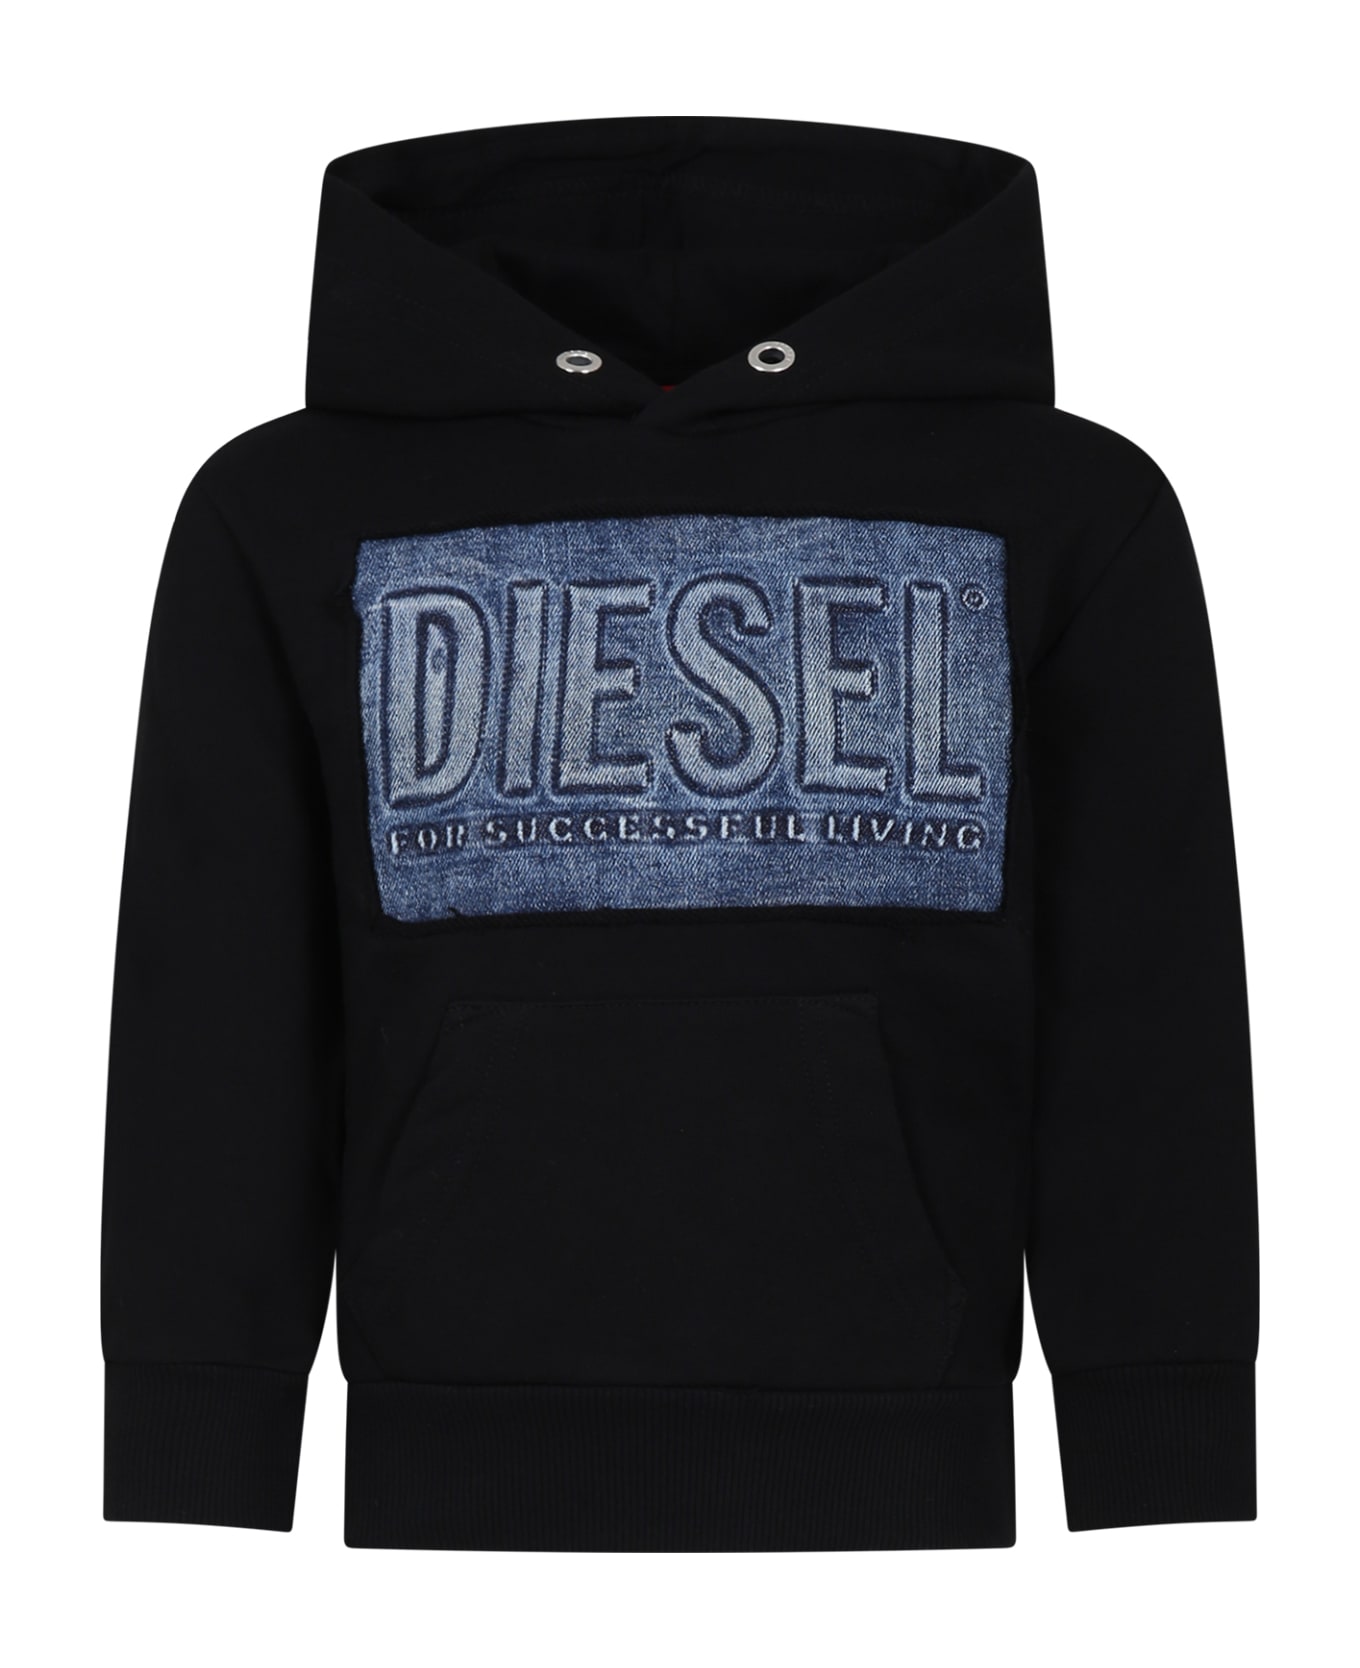 Diesel Black Sweatshirt For Kids With Logo - Black